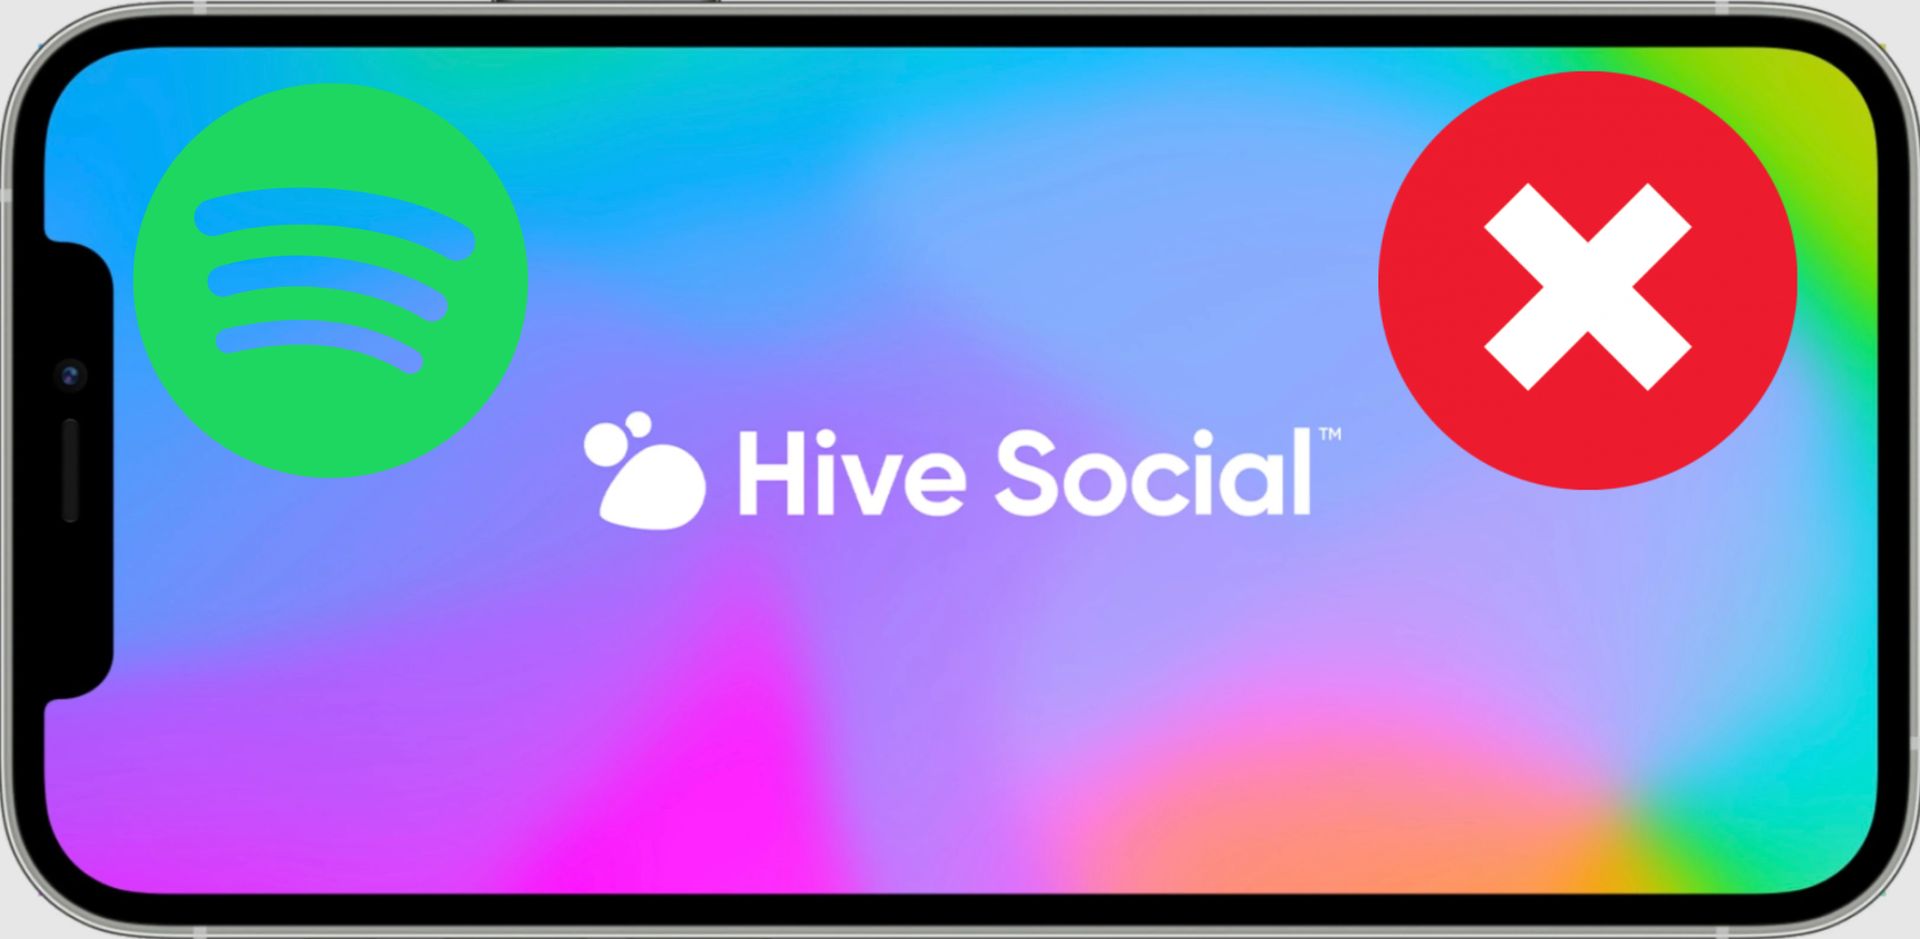 Hive Spotify-integratie: Hoe Spotify verbinden met Hive Social?